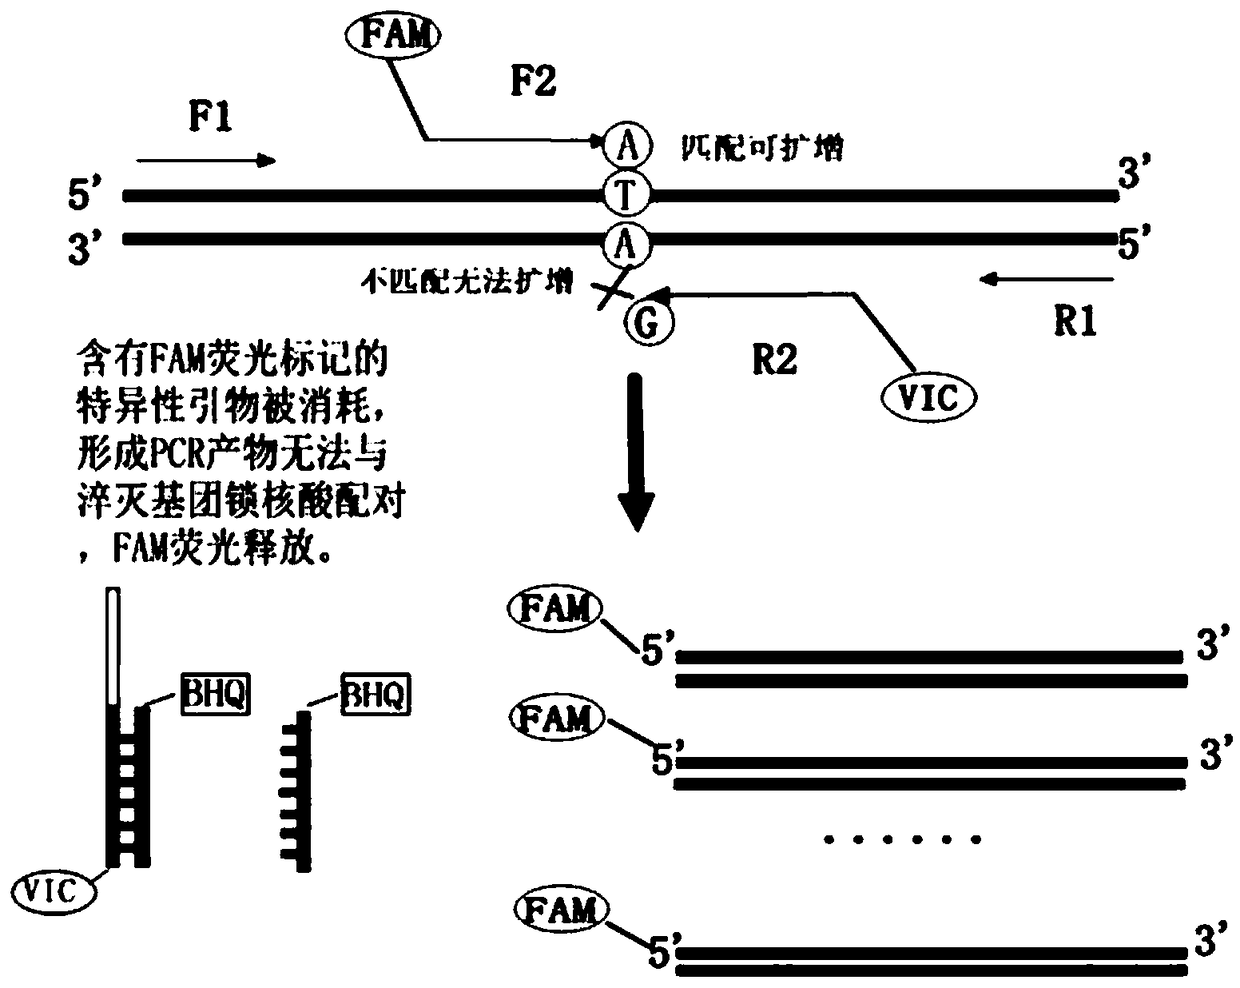 Human SLCO1B1 and ApoE gene polymorphism detection kit, and preparation method and application of same